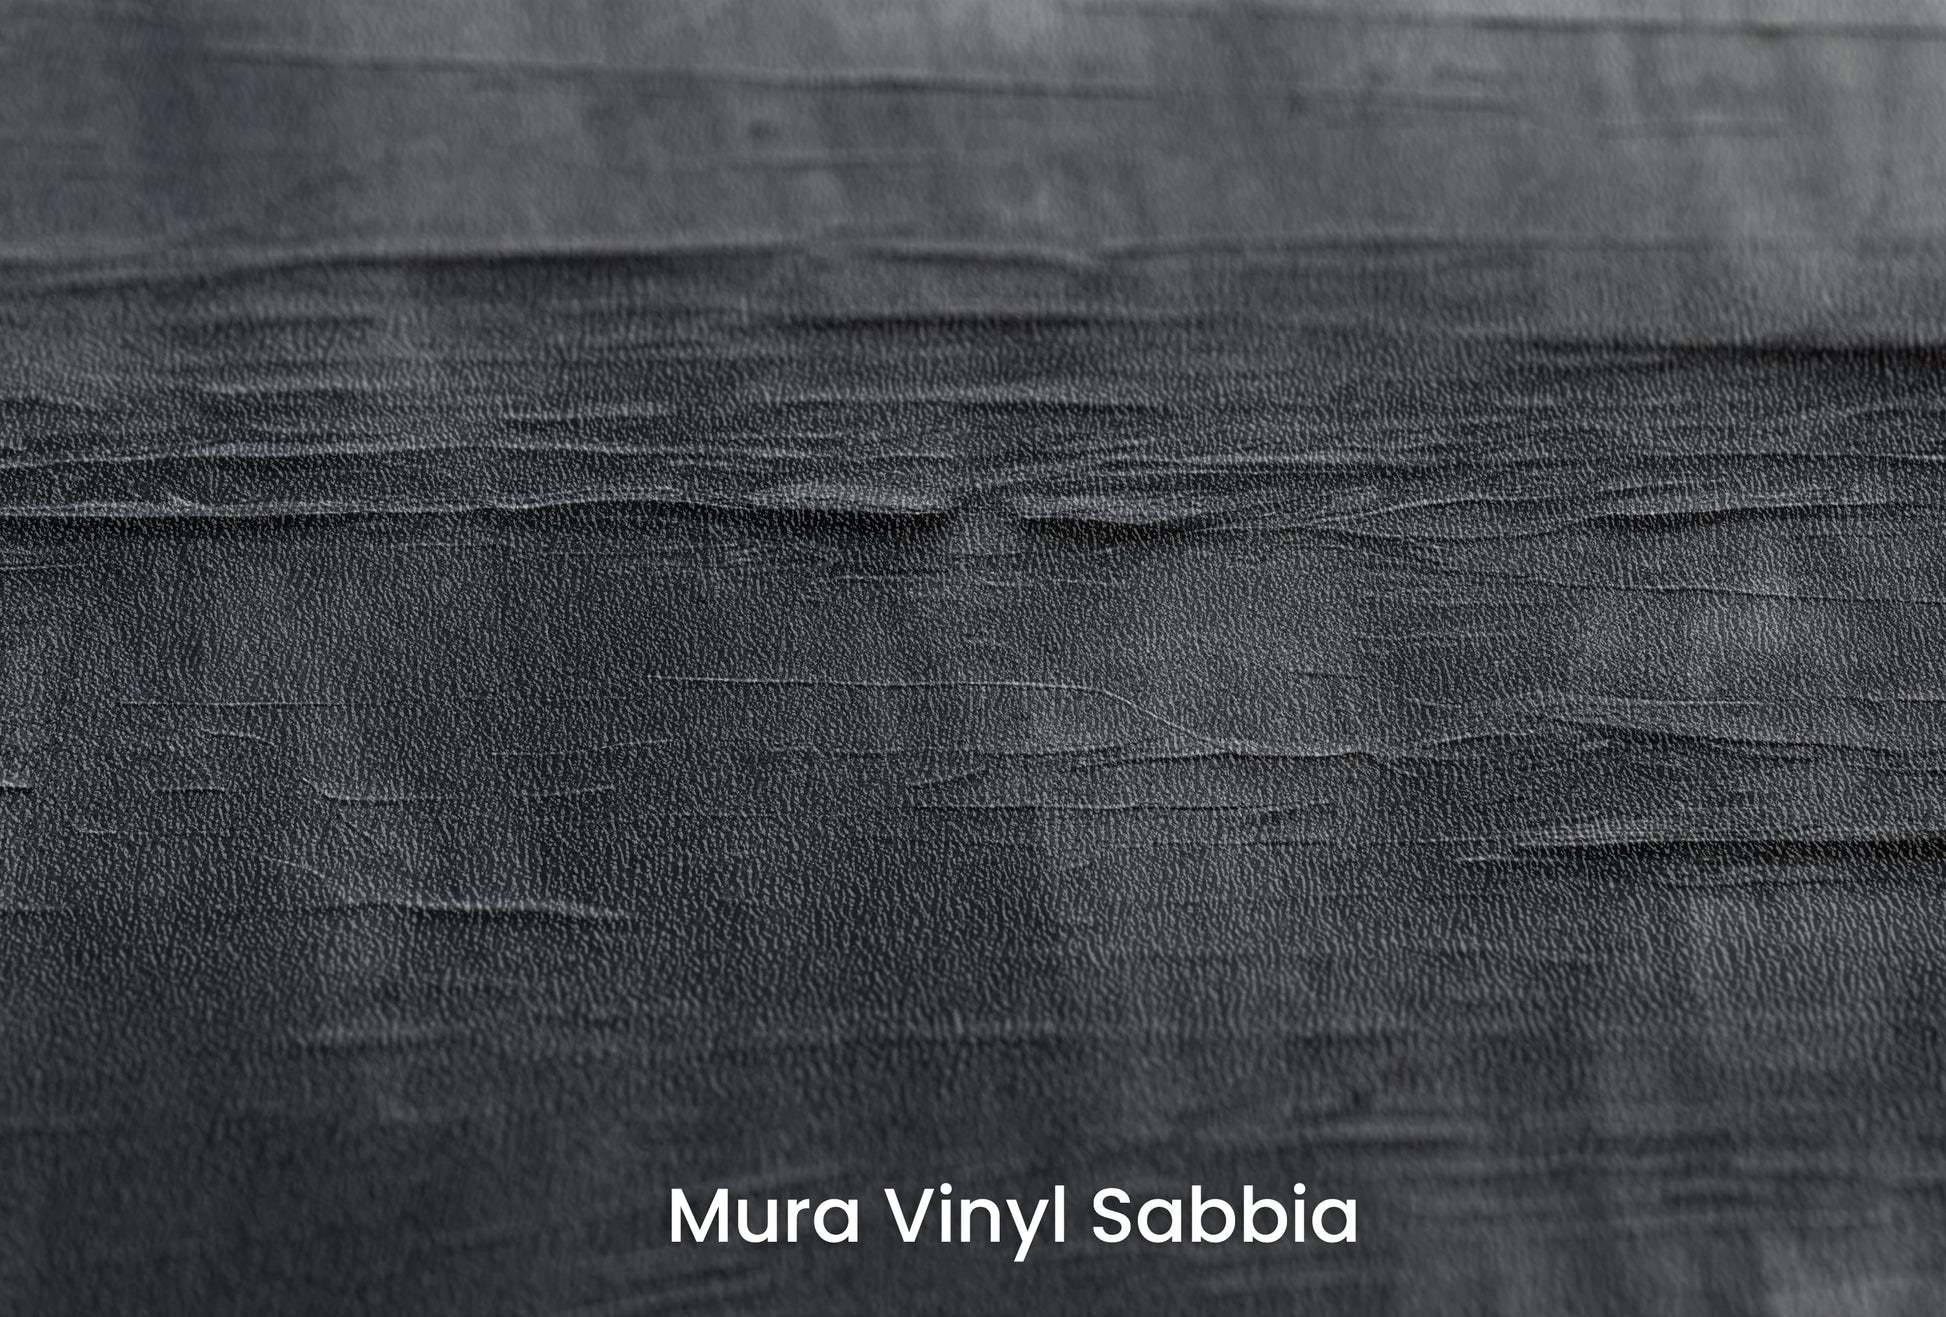 Zbliżenie na artystyczną fototapetę o nazwie Canvas Grayscale na podłożu Mura Vinyl Sabbia struktura grubego ziarna piasku.